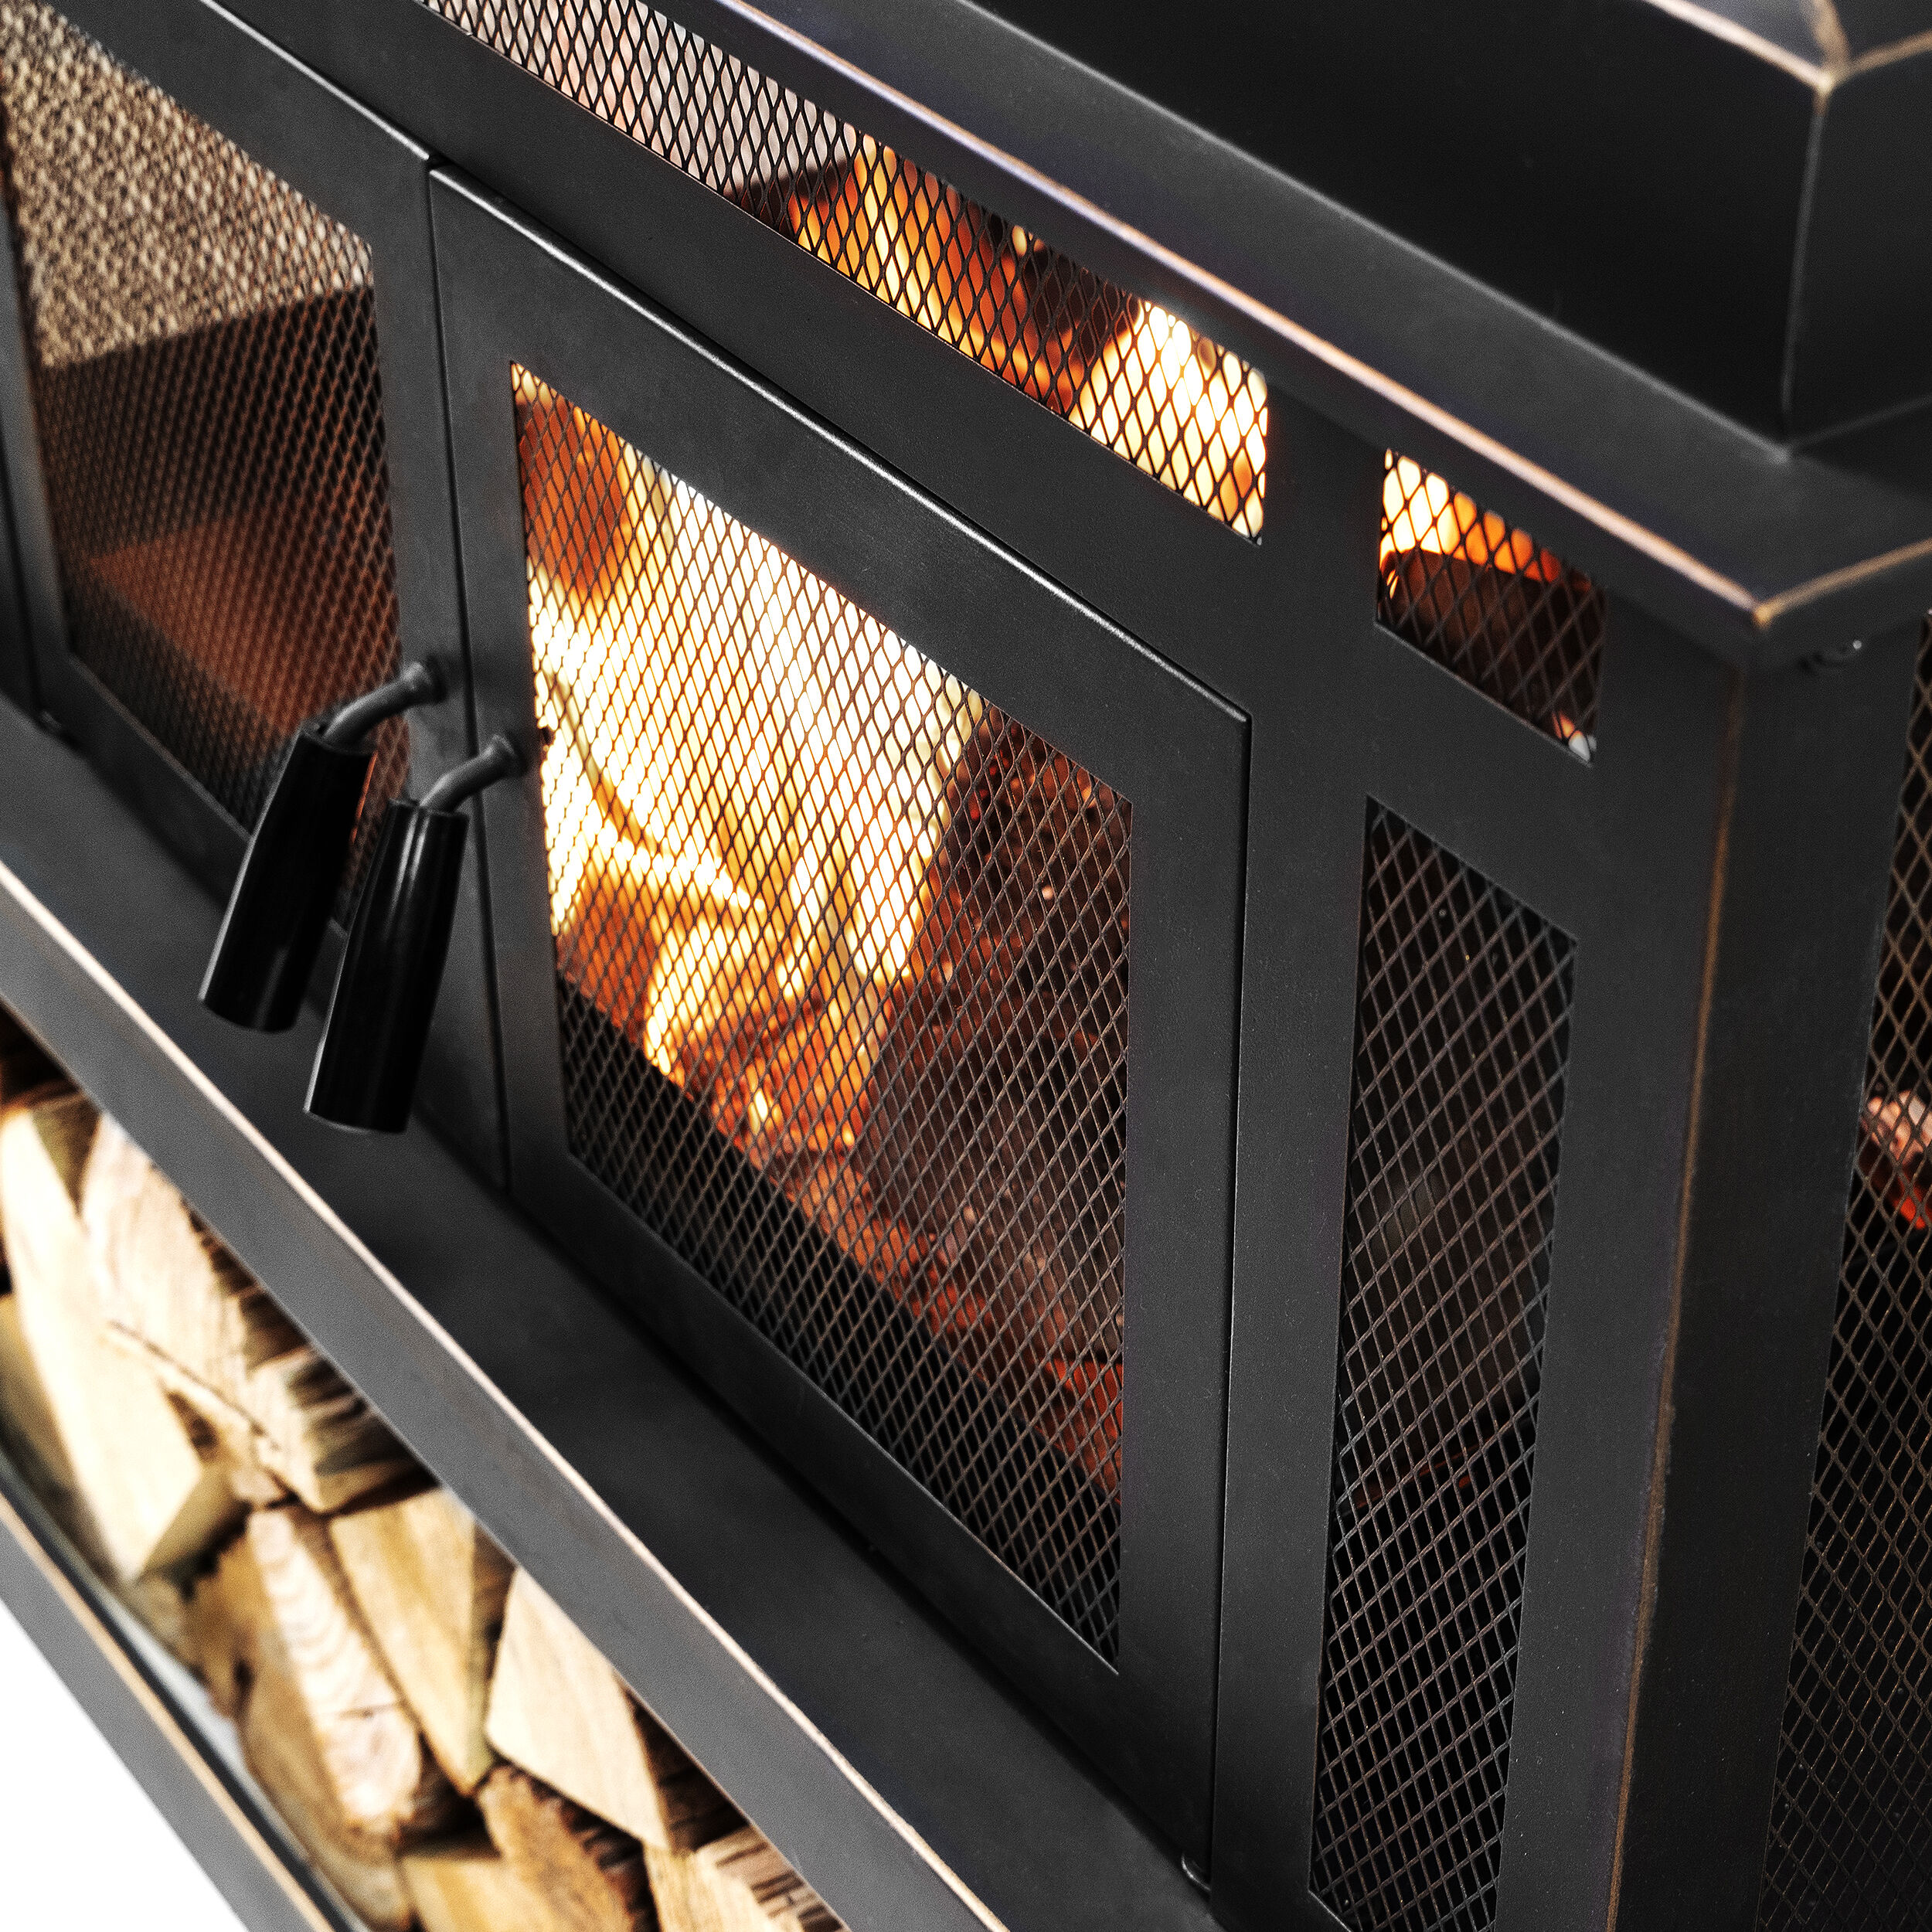 Ahmier Terrace Heater Steel Wood Burning Outdoor Fireplace